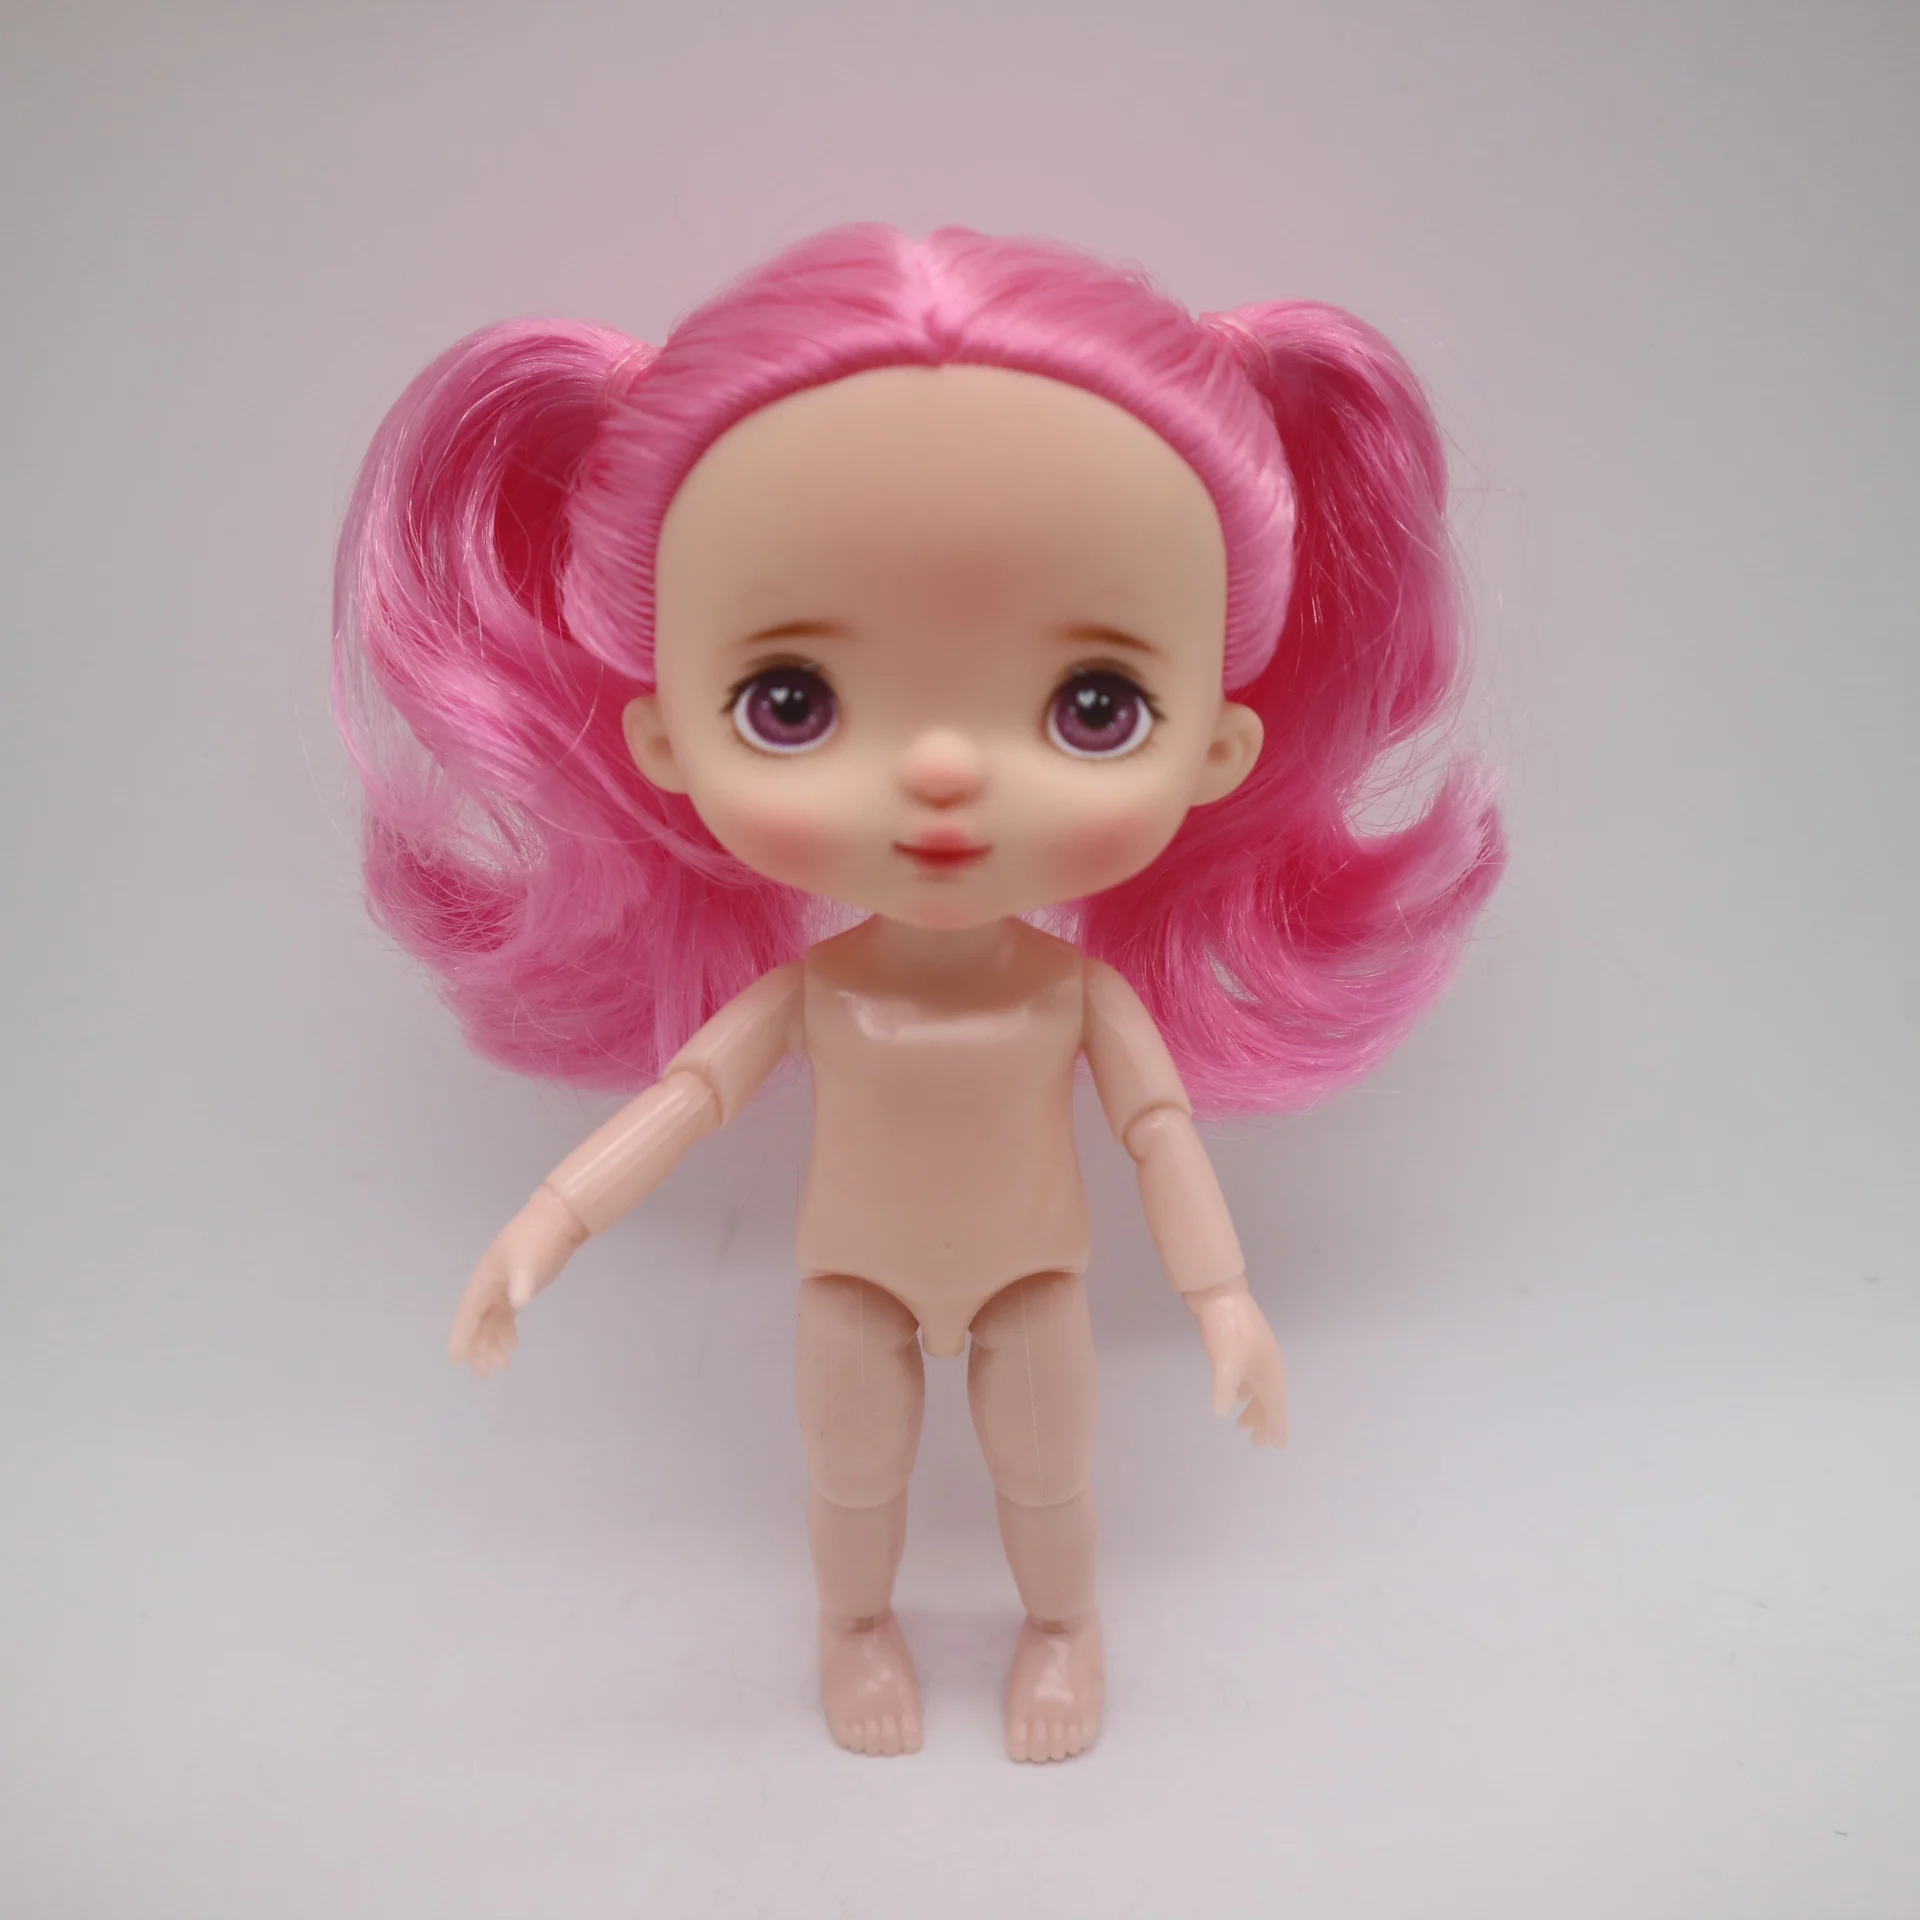 Индивидуальные лица для кукол holal, 16 см куклы как holal куклы, волосы можно выбрать